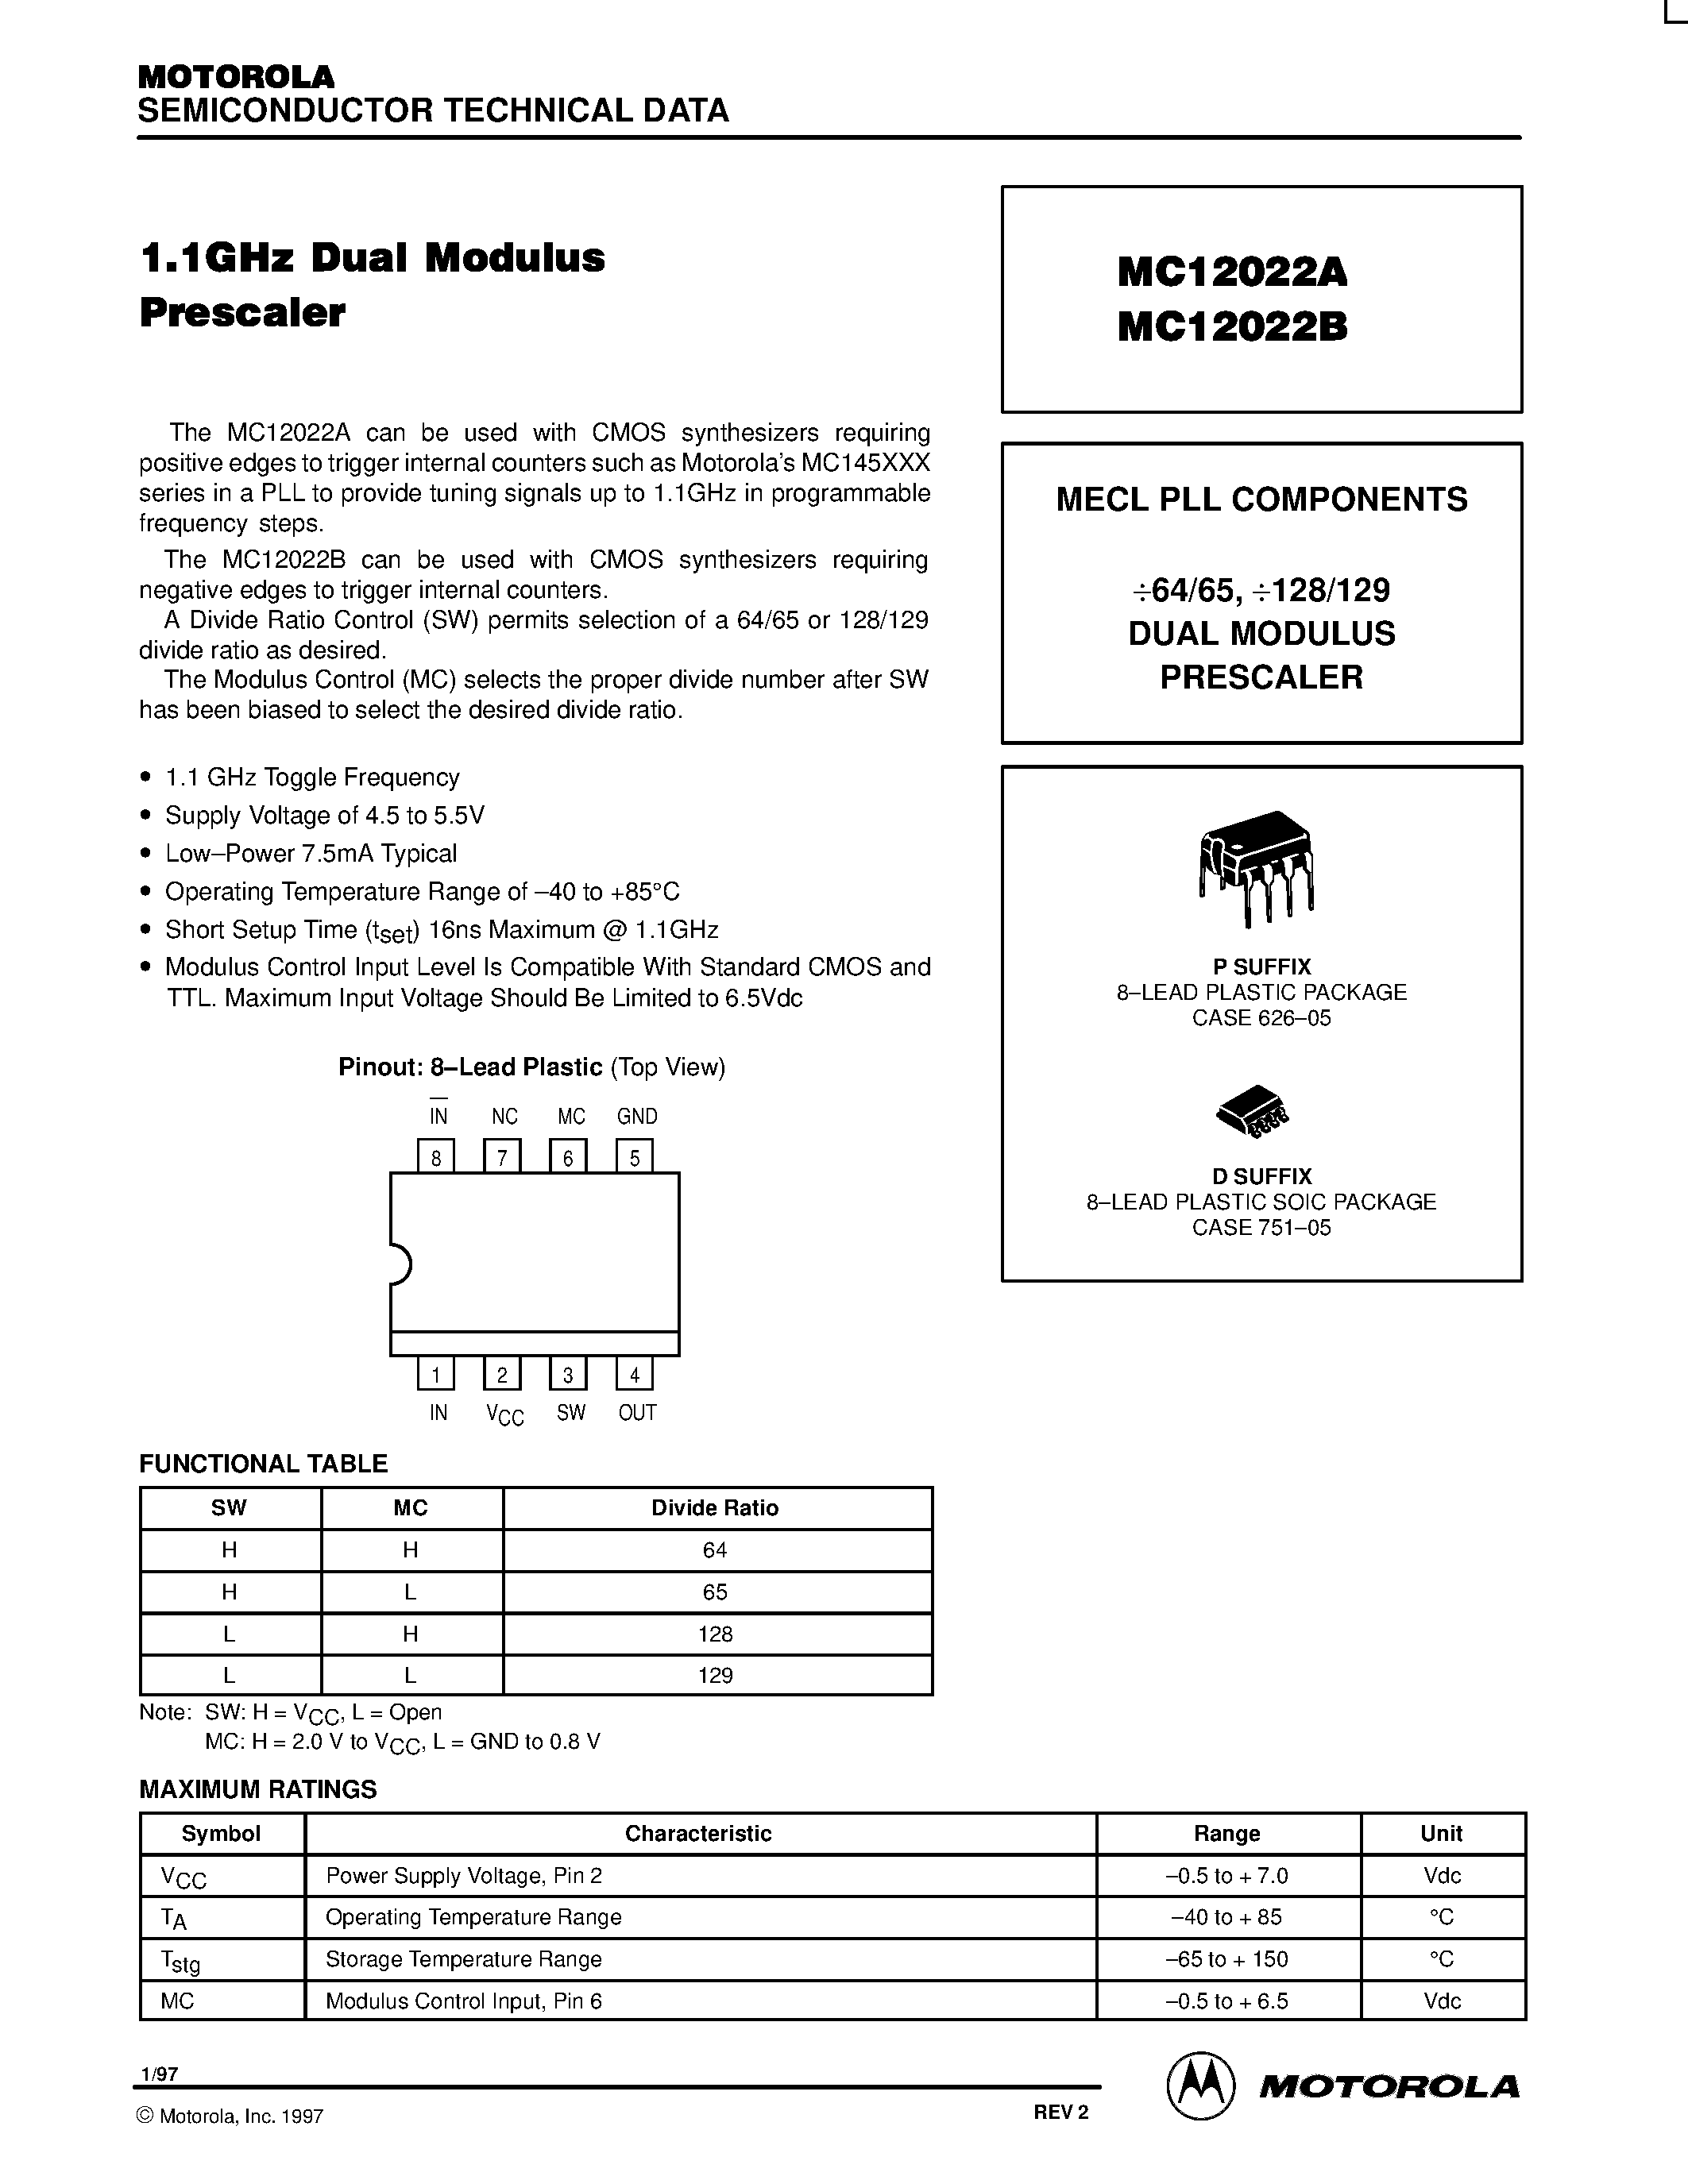 Даташит MC12022A - (MC12022A / MC12022B) Dual Modulus Prescaler страница 1